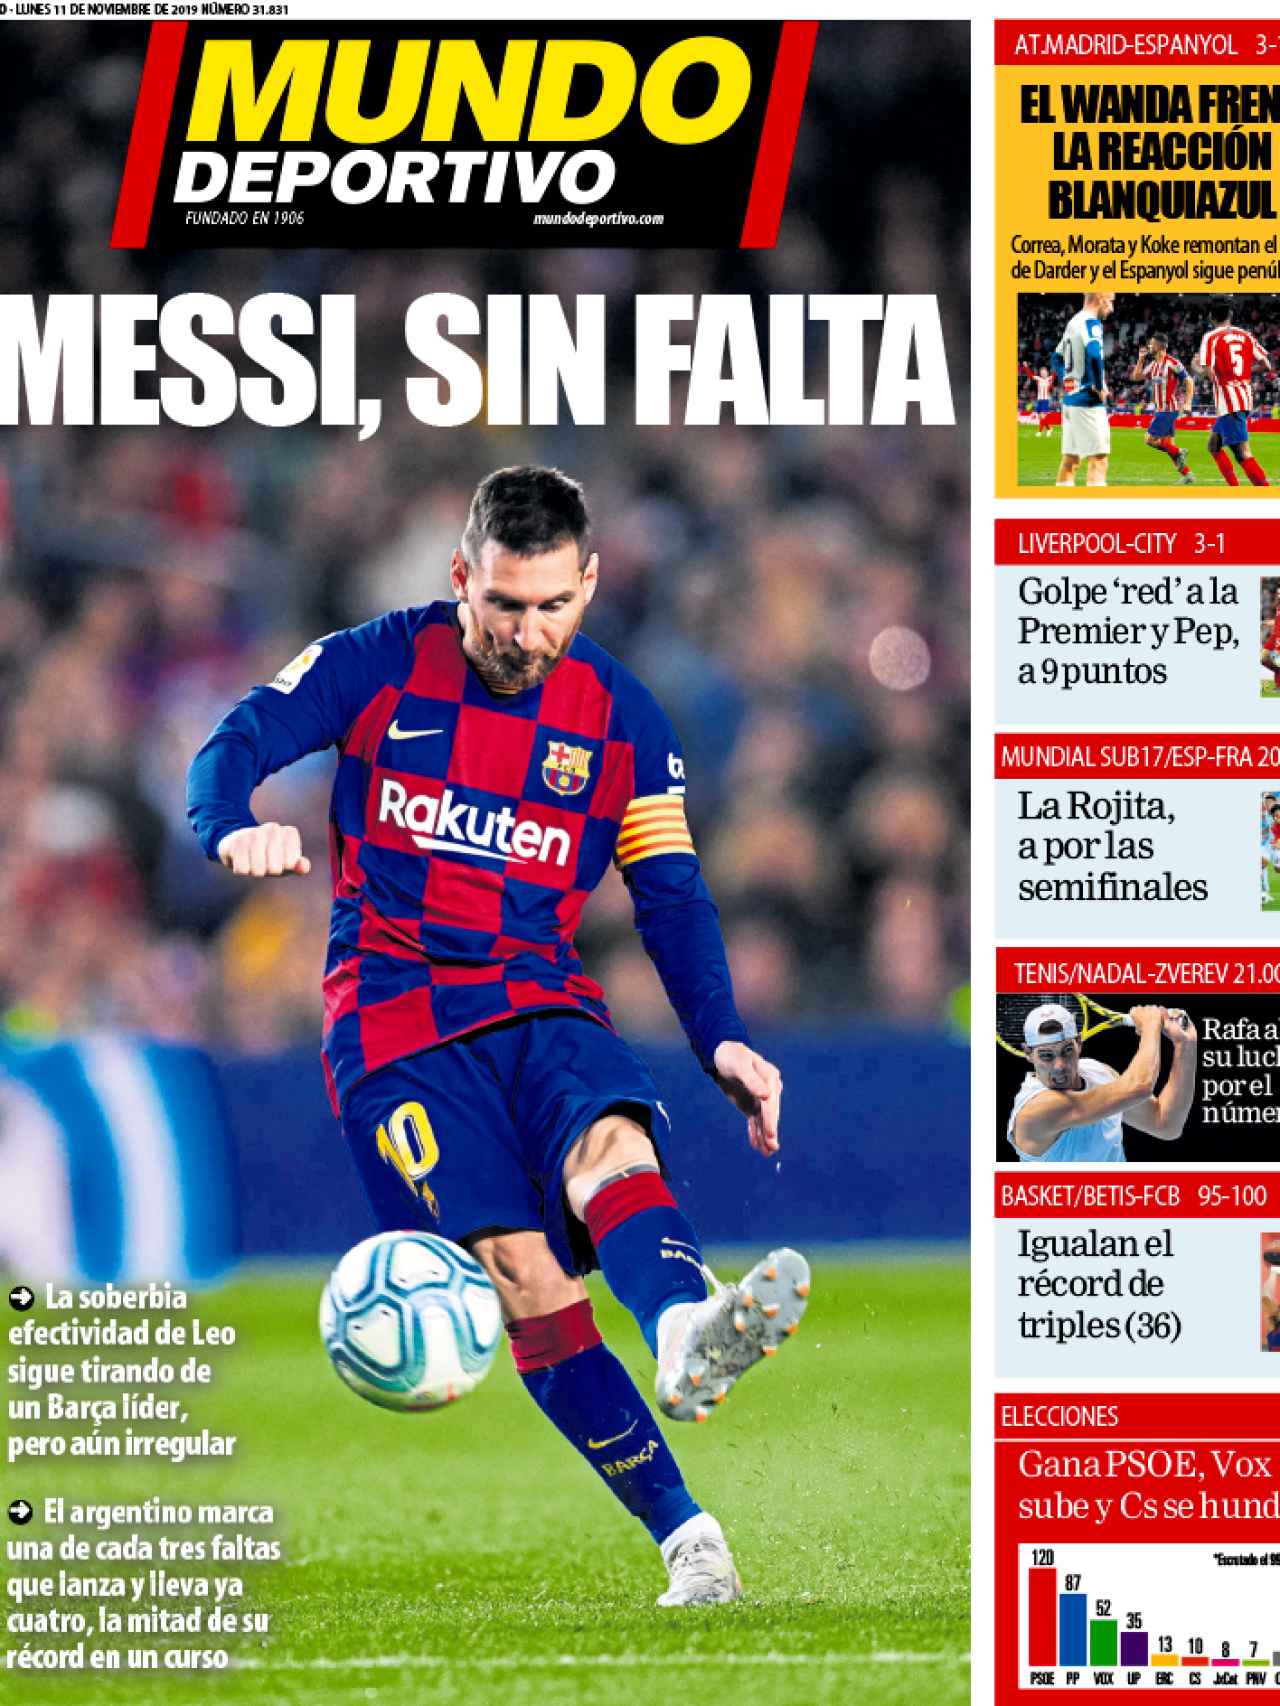 La portada del diario Mundo Deportivo (11/10/2019)